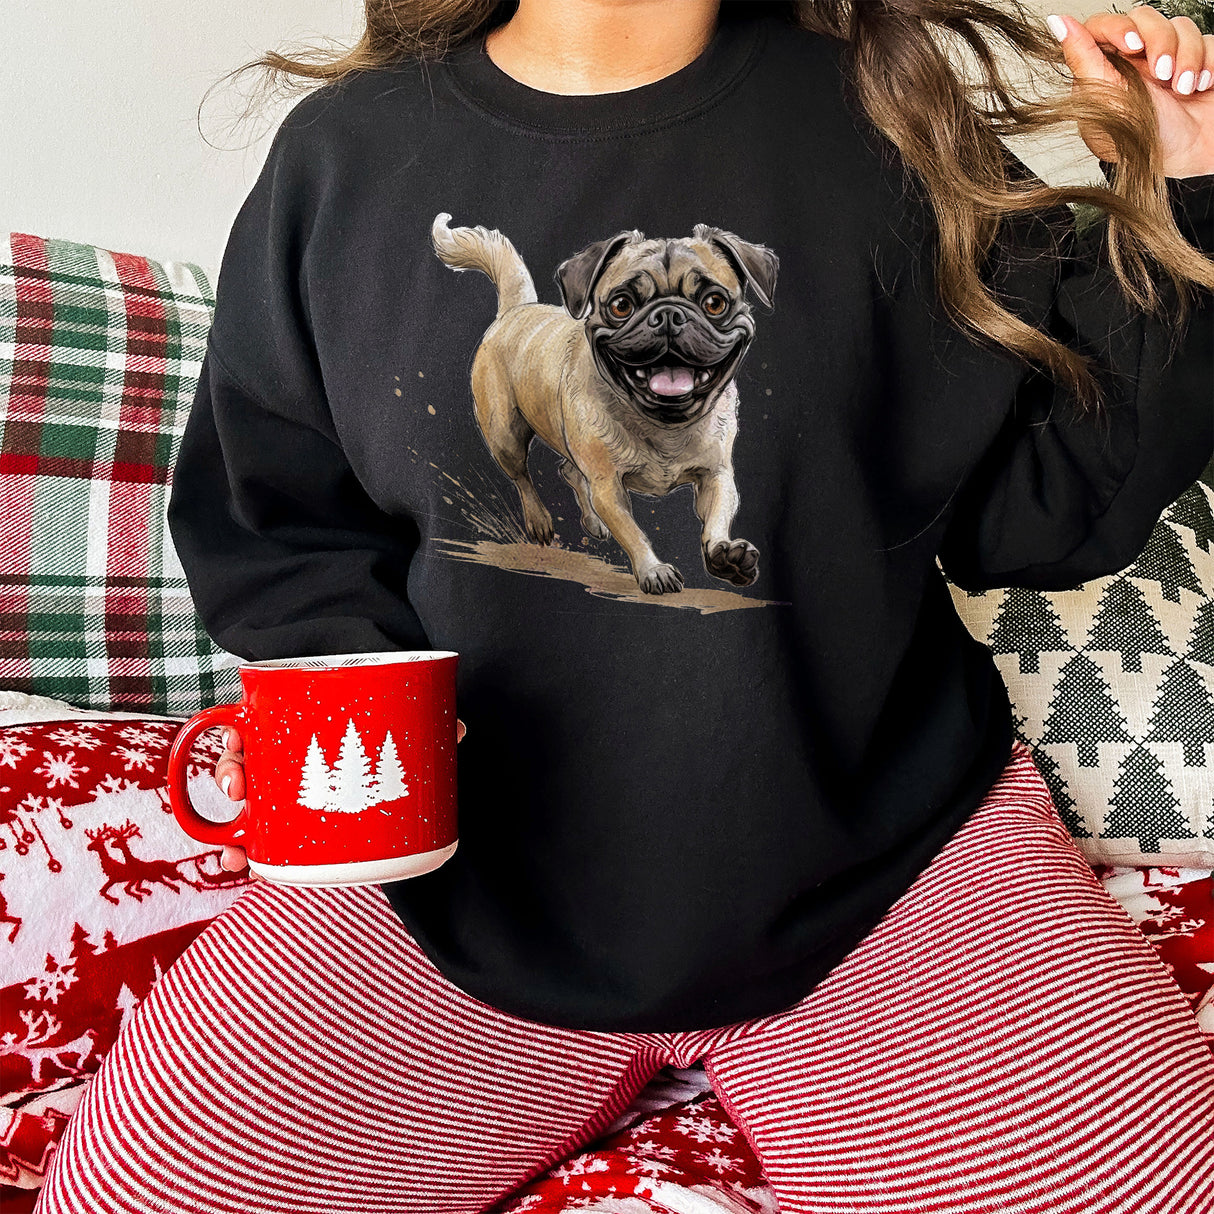 Happy Pug Unisex Adult Sweatshirt